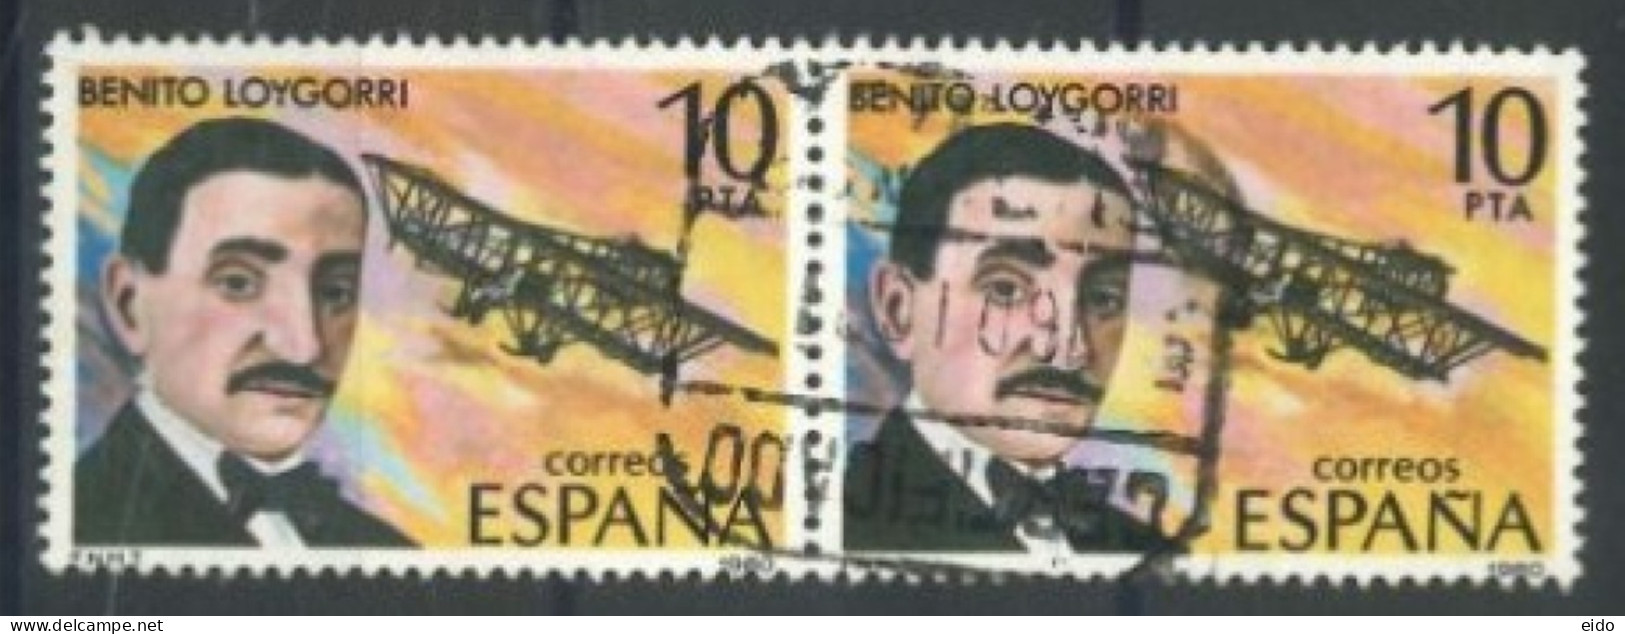 SPAIN, 1980, AVIATION PIONEERS PAIR OF STAMPS, # 2228, USED. - Gebruikt